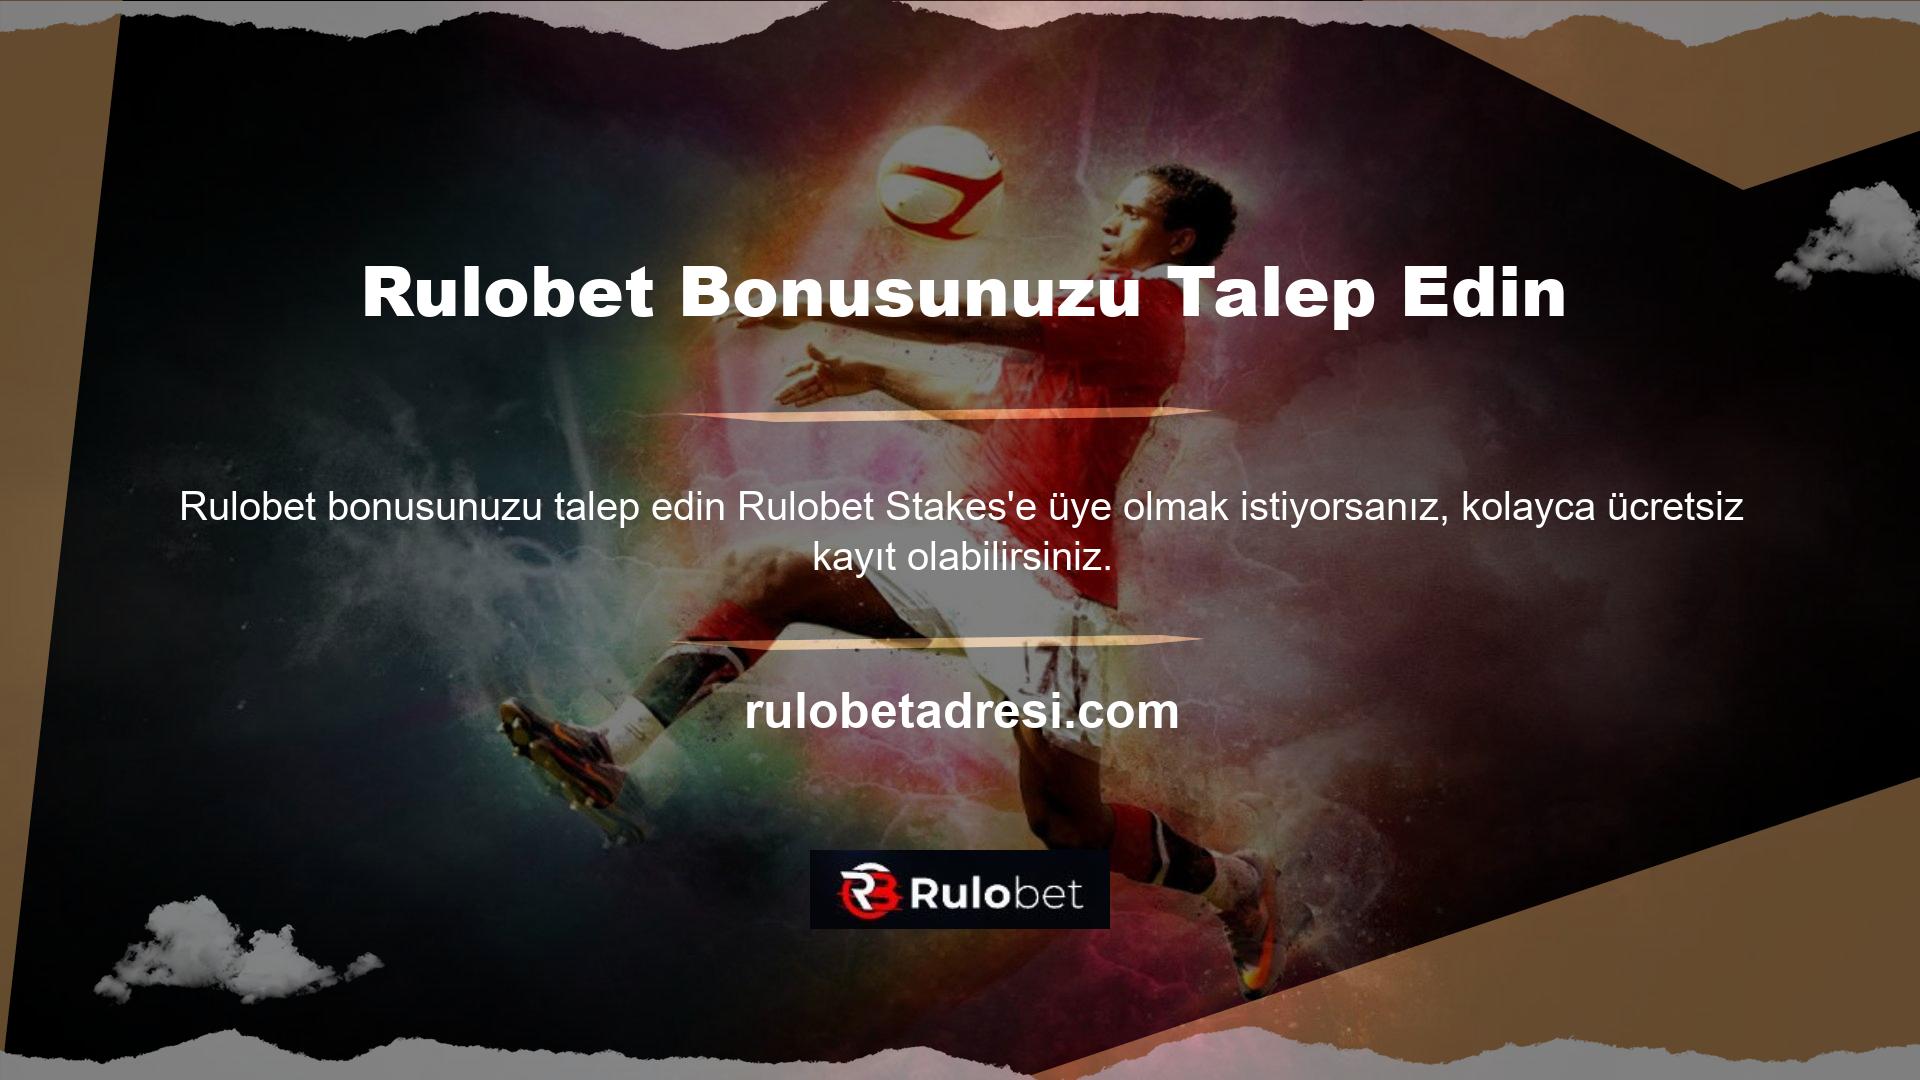 Üyelik oluşturan üye, Rulobet web sitesinde kullanıcıya sunulan canlı destek bölümünden üye olarak bonus talebinde bulunabilir